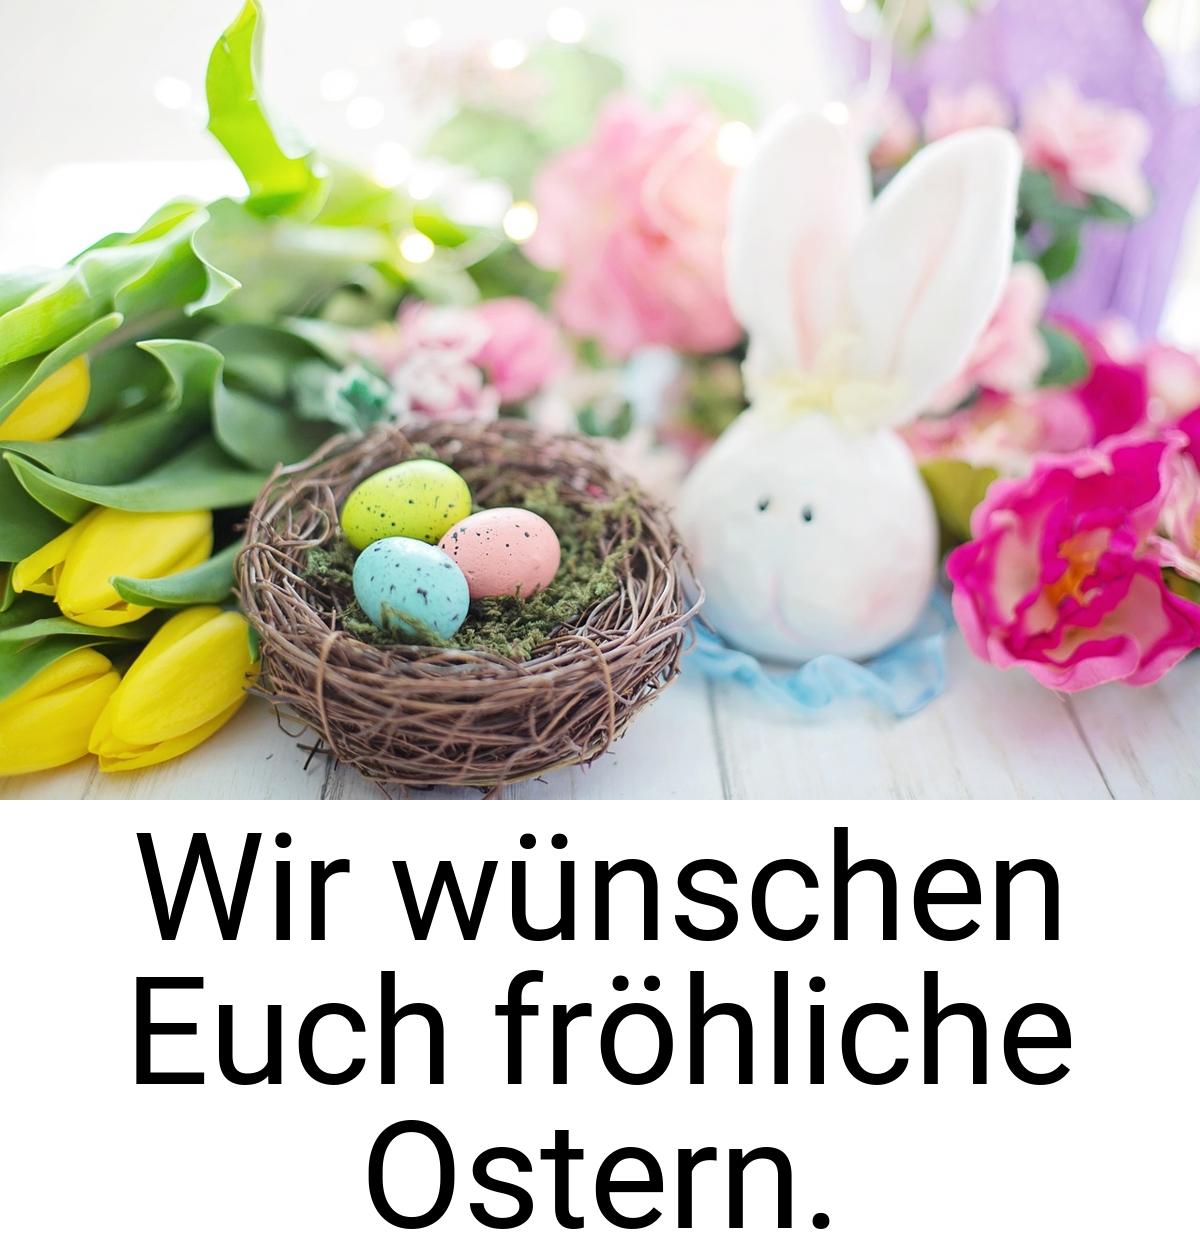 Wir wünschen Euch fröhliche Ostern